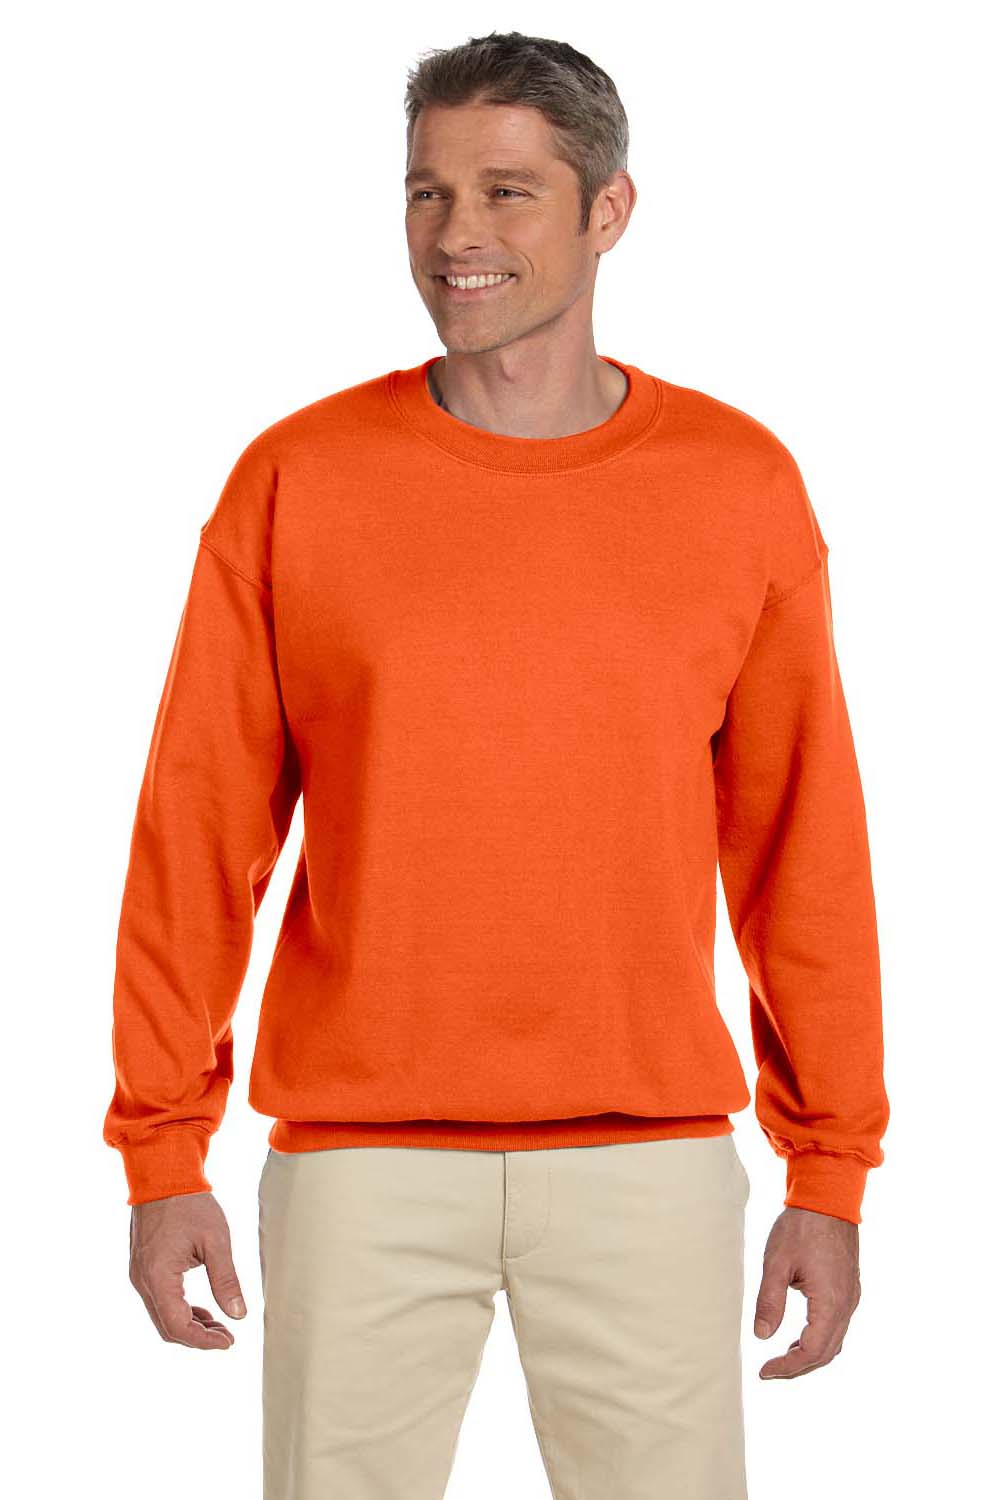 Jerzees 4662 Mens Super Sweats NuBlend Fleece Crewneck Sweatshirt Safety Orange Front